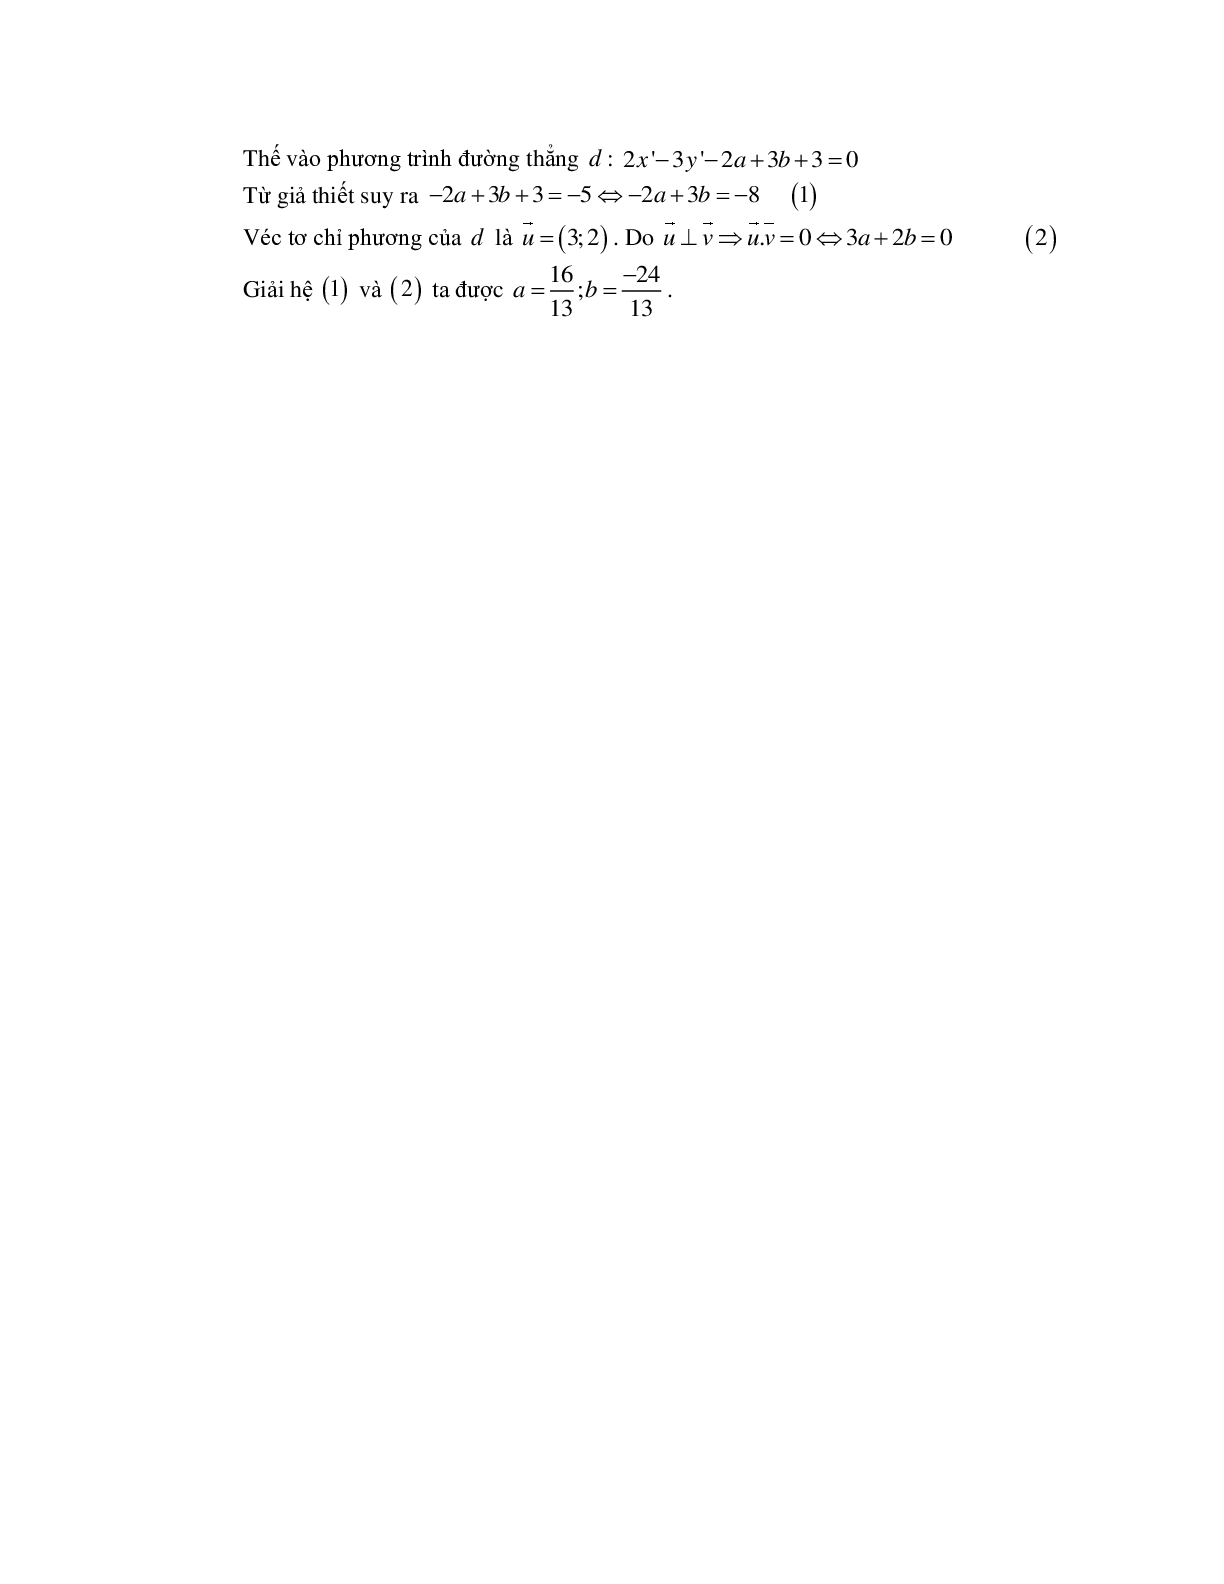 Cách xác định ảnh của một điểm hoặc một hình qua phép tịnh tiến bằng phương pháp tọa độ (trang 6)